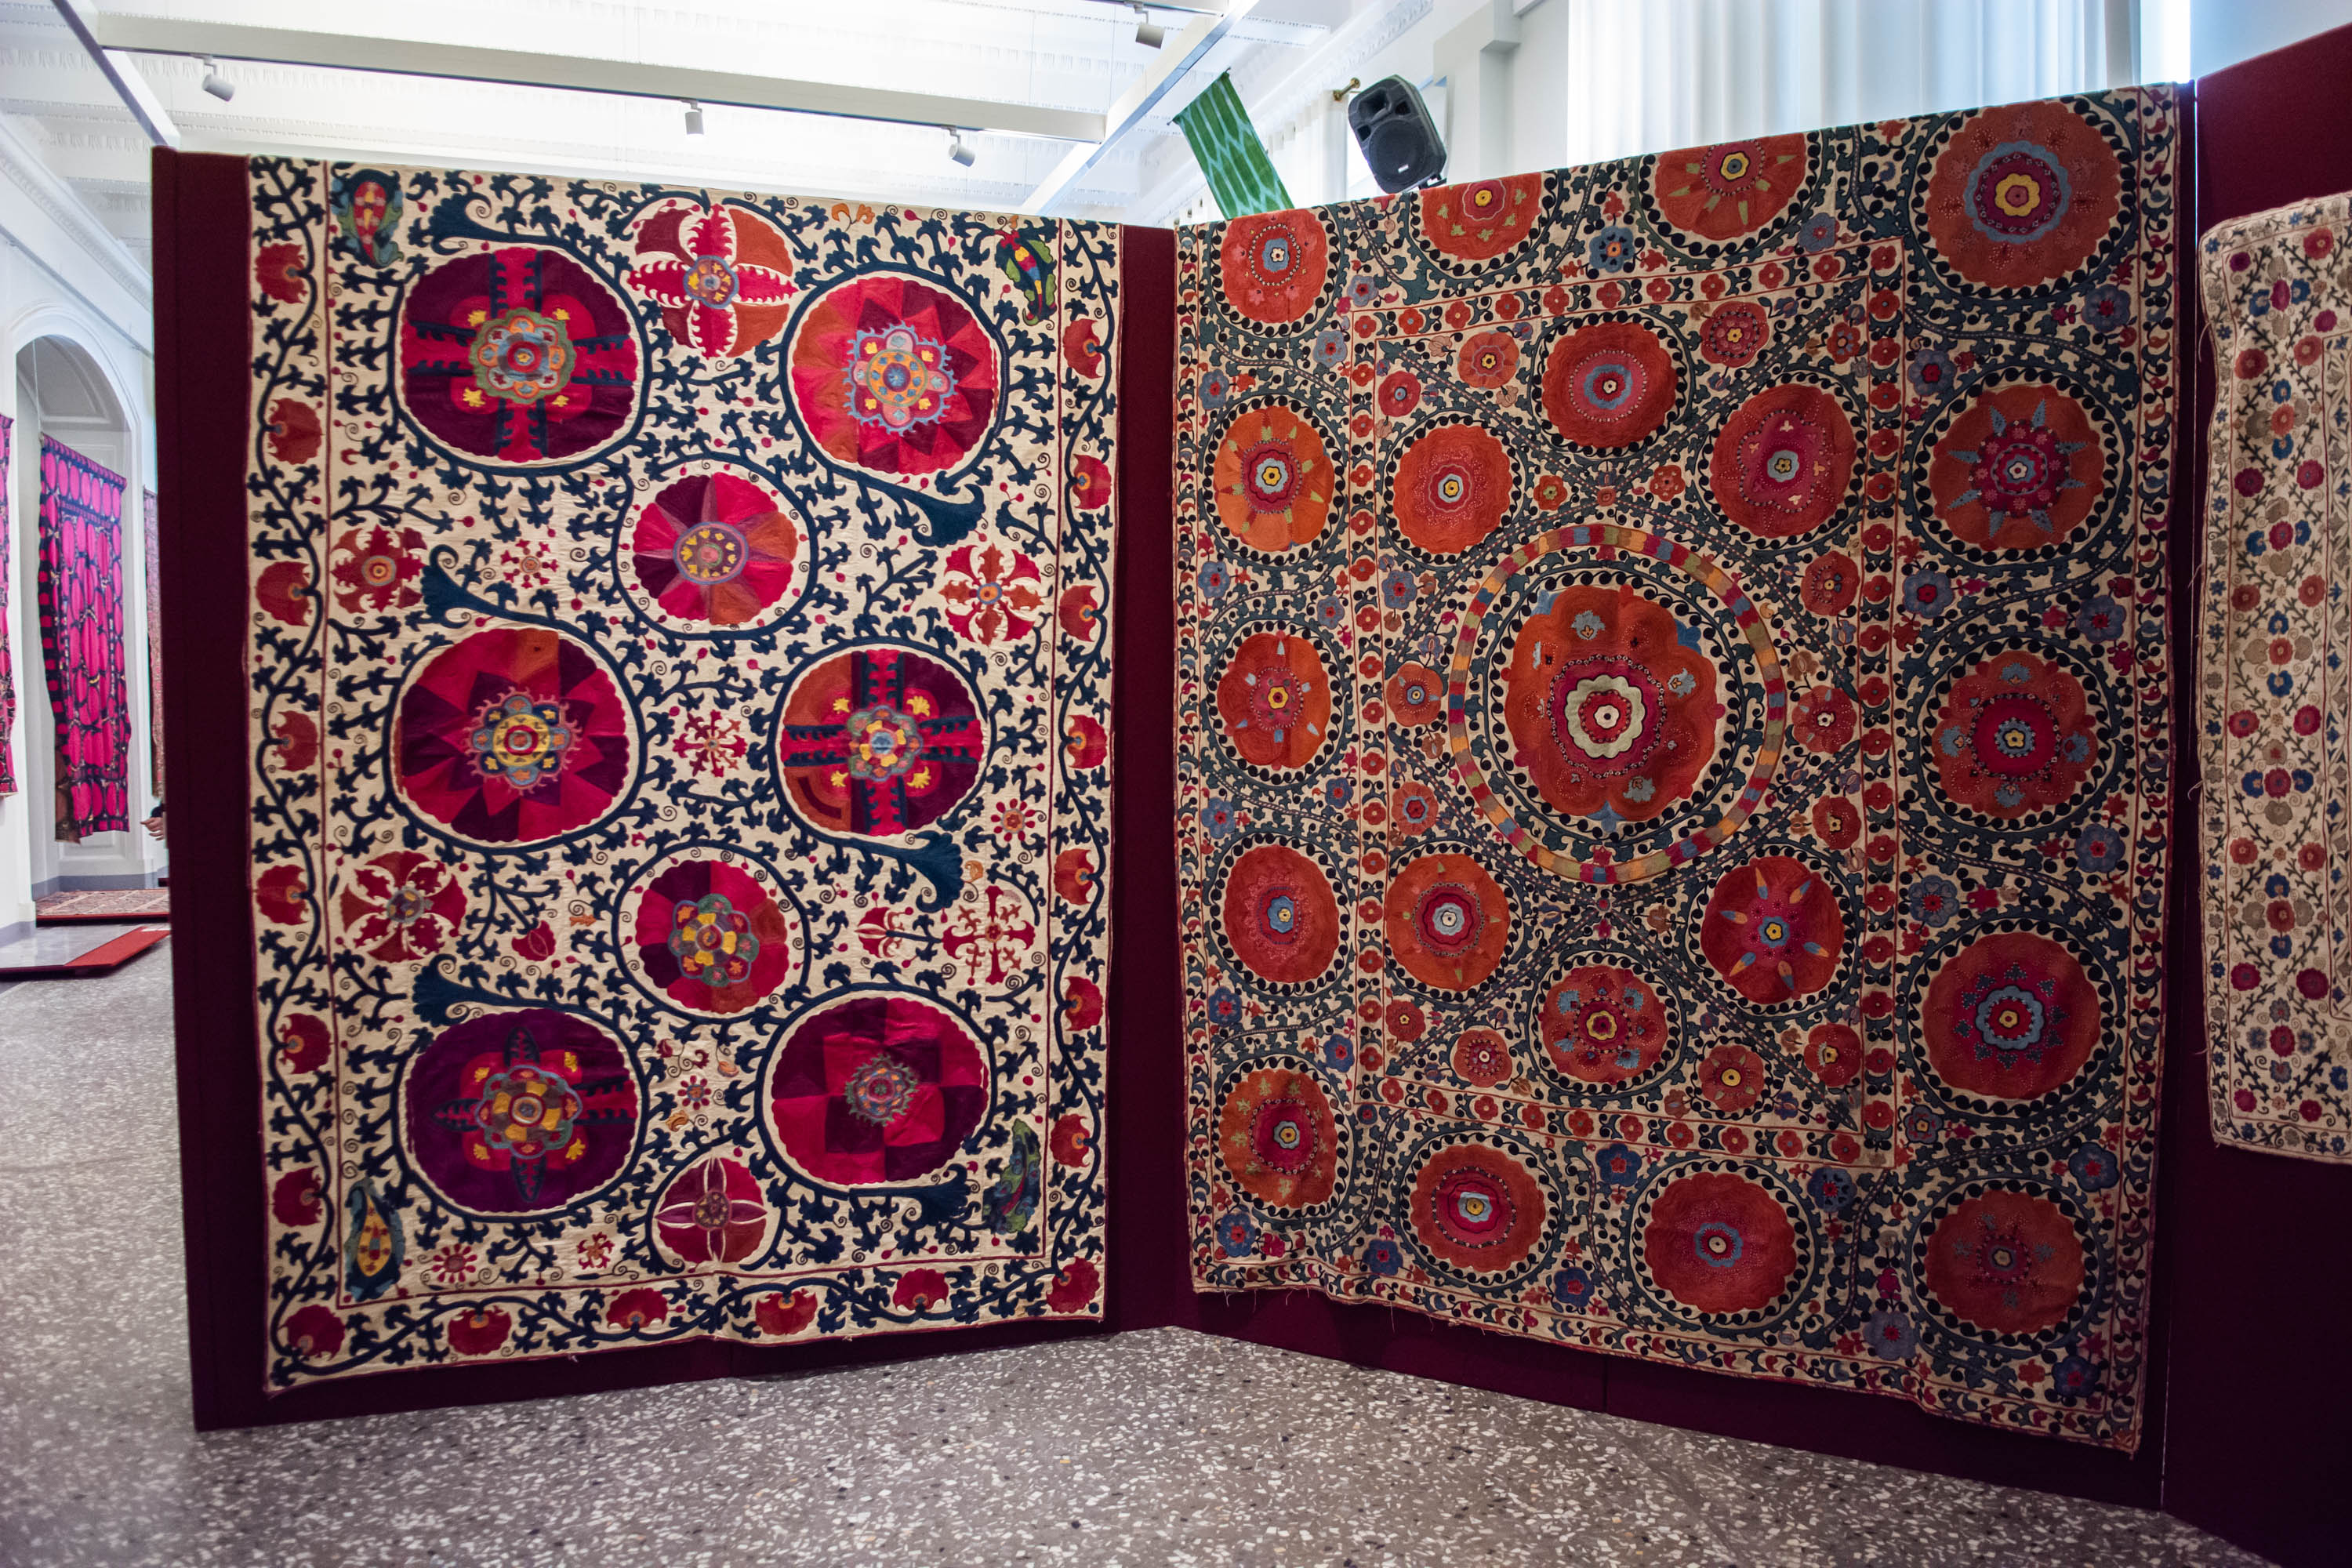 Шелковые нити Узбекистана — традиционные вышивки и ткани13